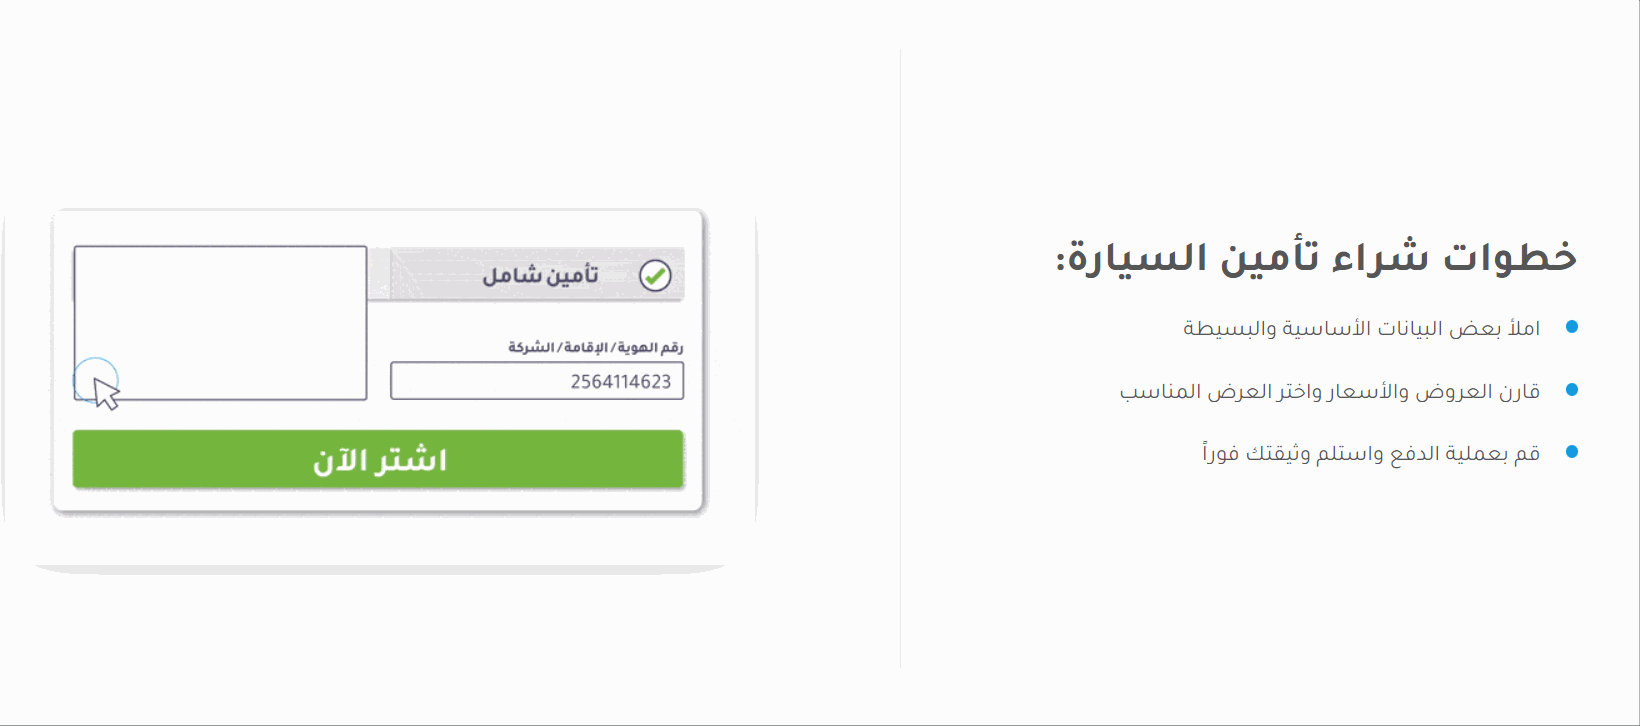 كيفية تحديد تأمين سيارات رخيص ومقارنة أسعار التأمين في السعودية 7